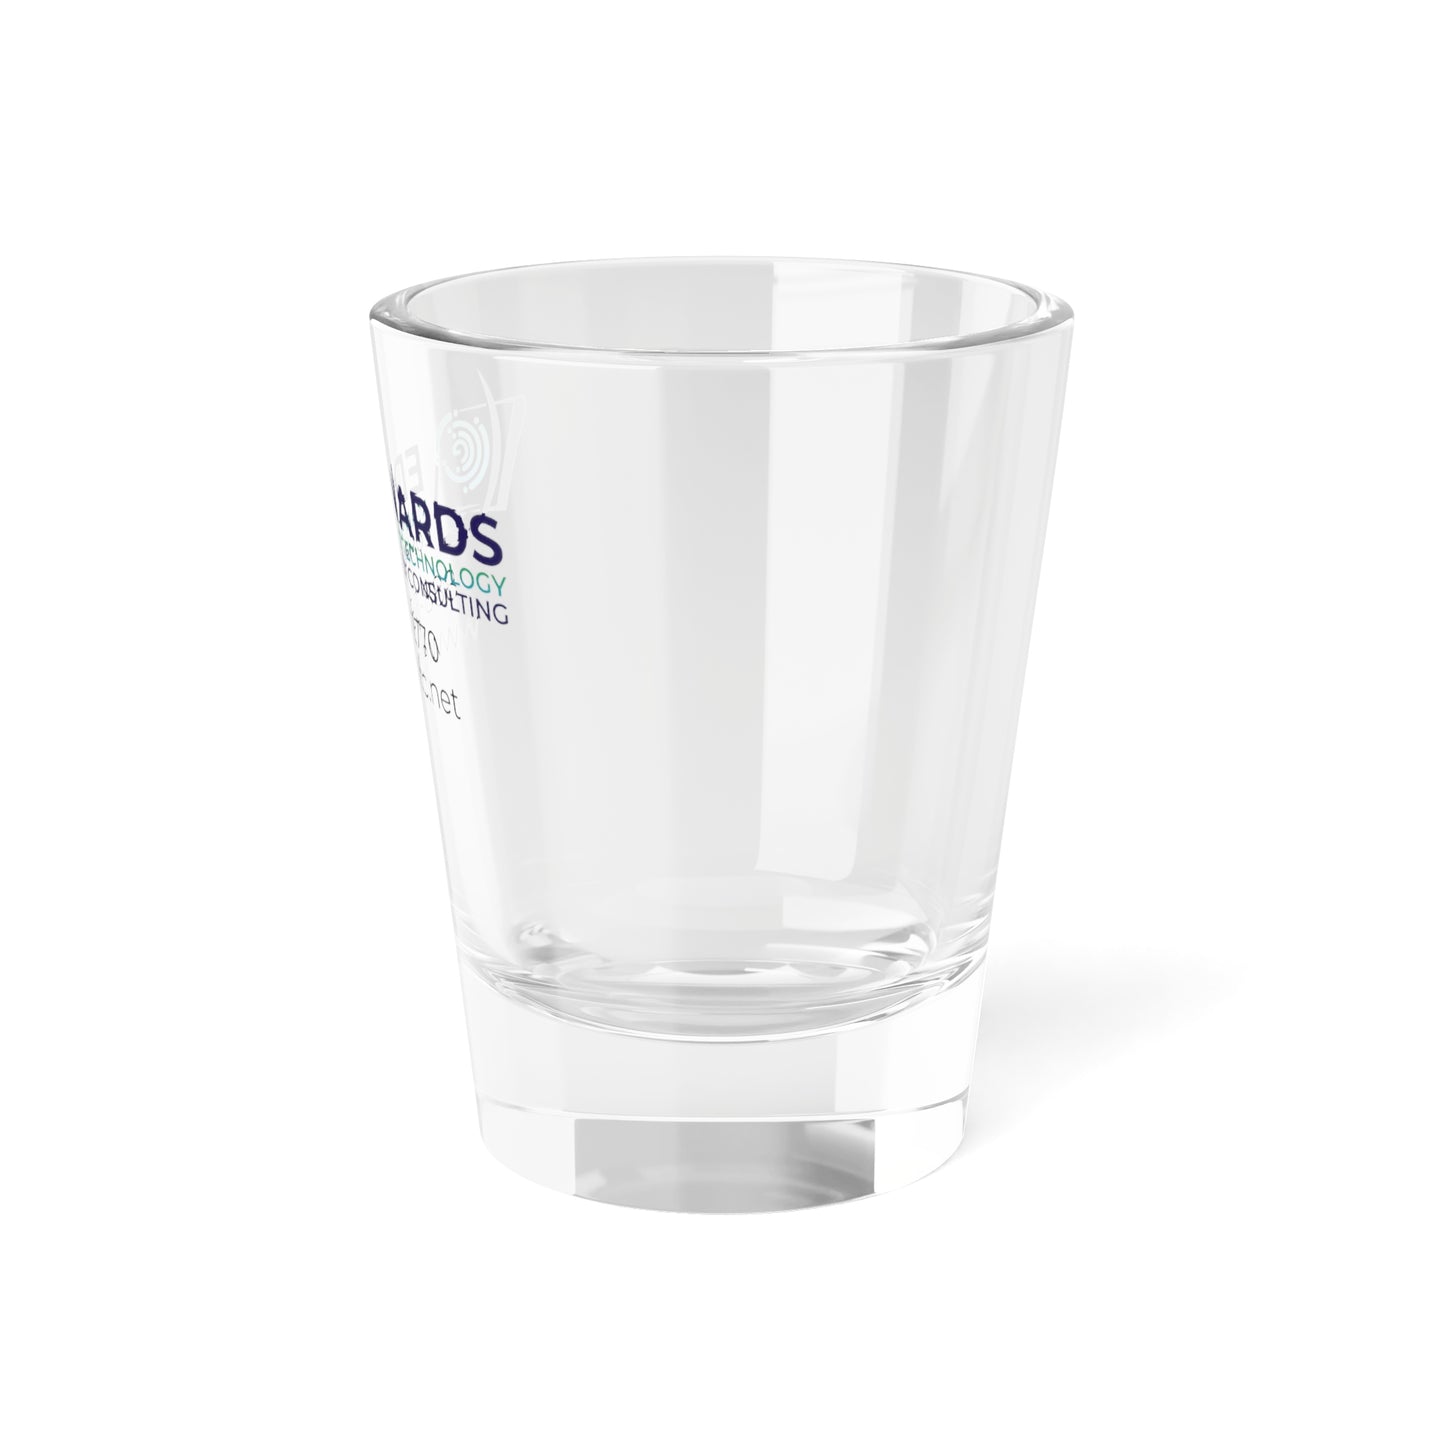 Edwards Managed Technology Shot Glass, 1.5oz